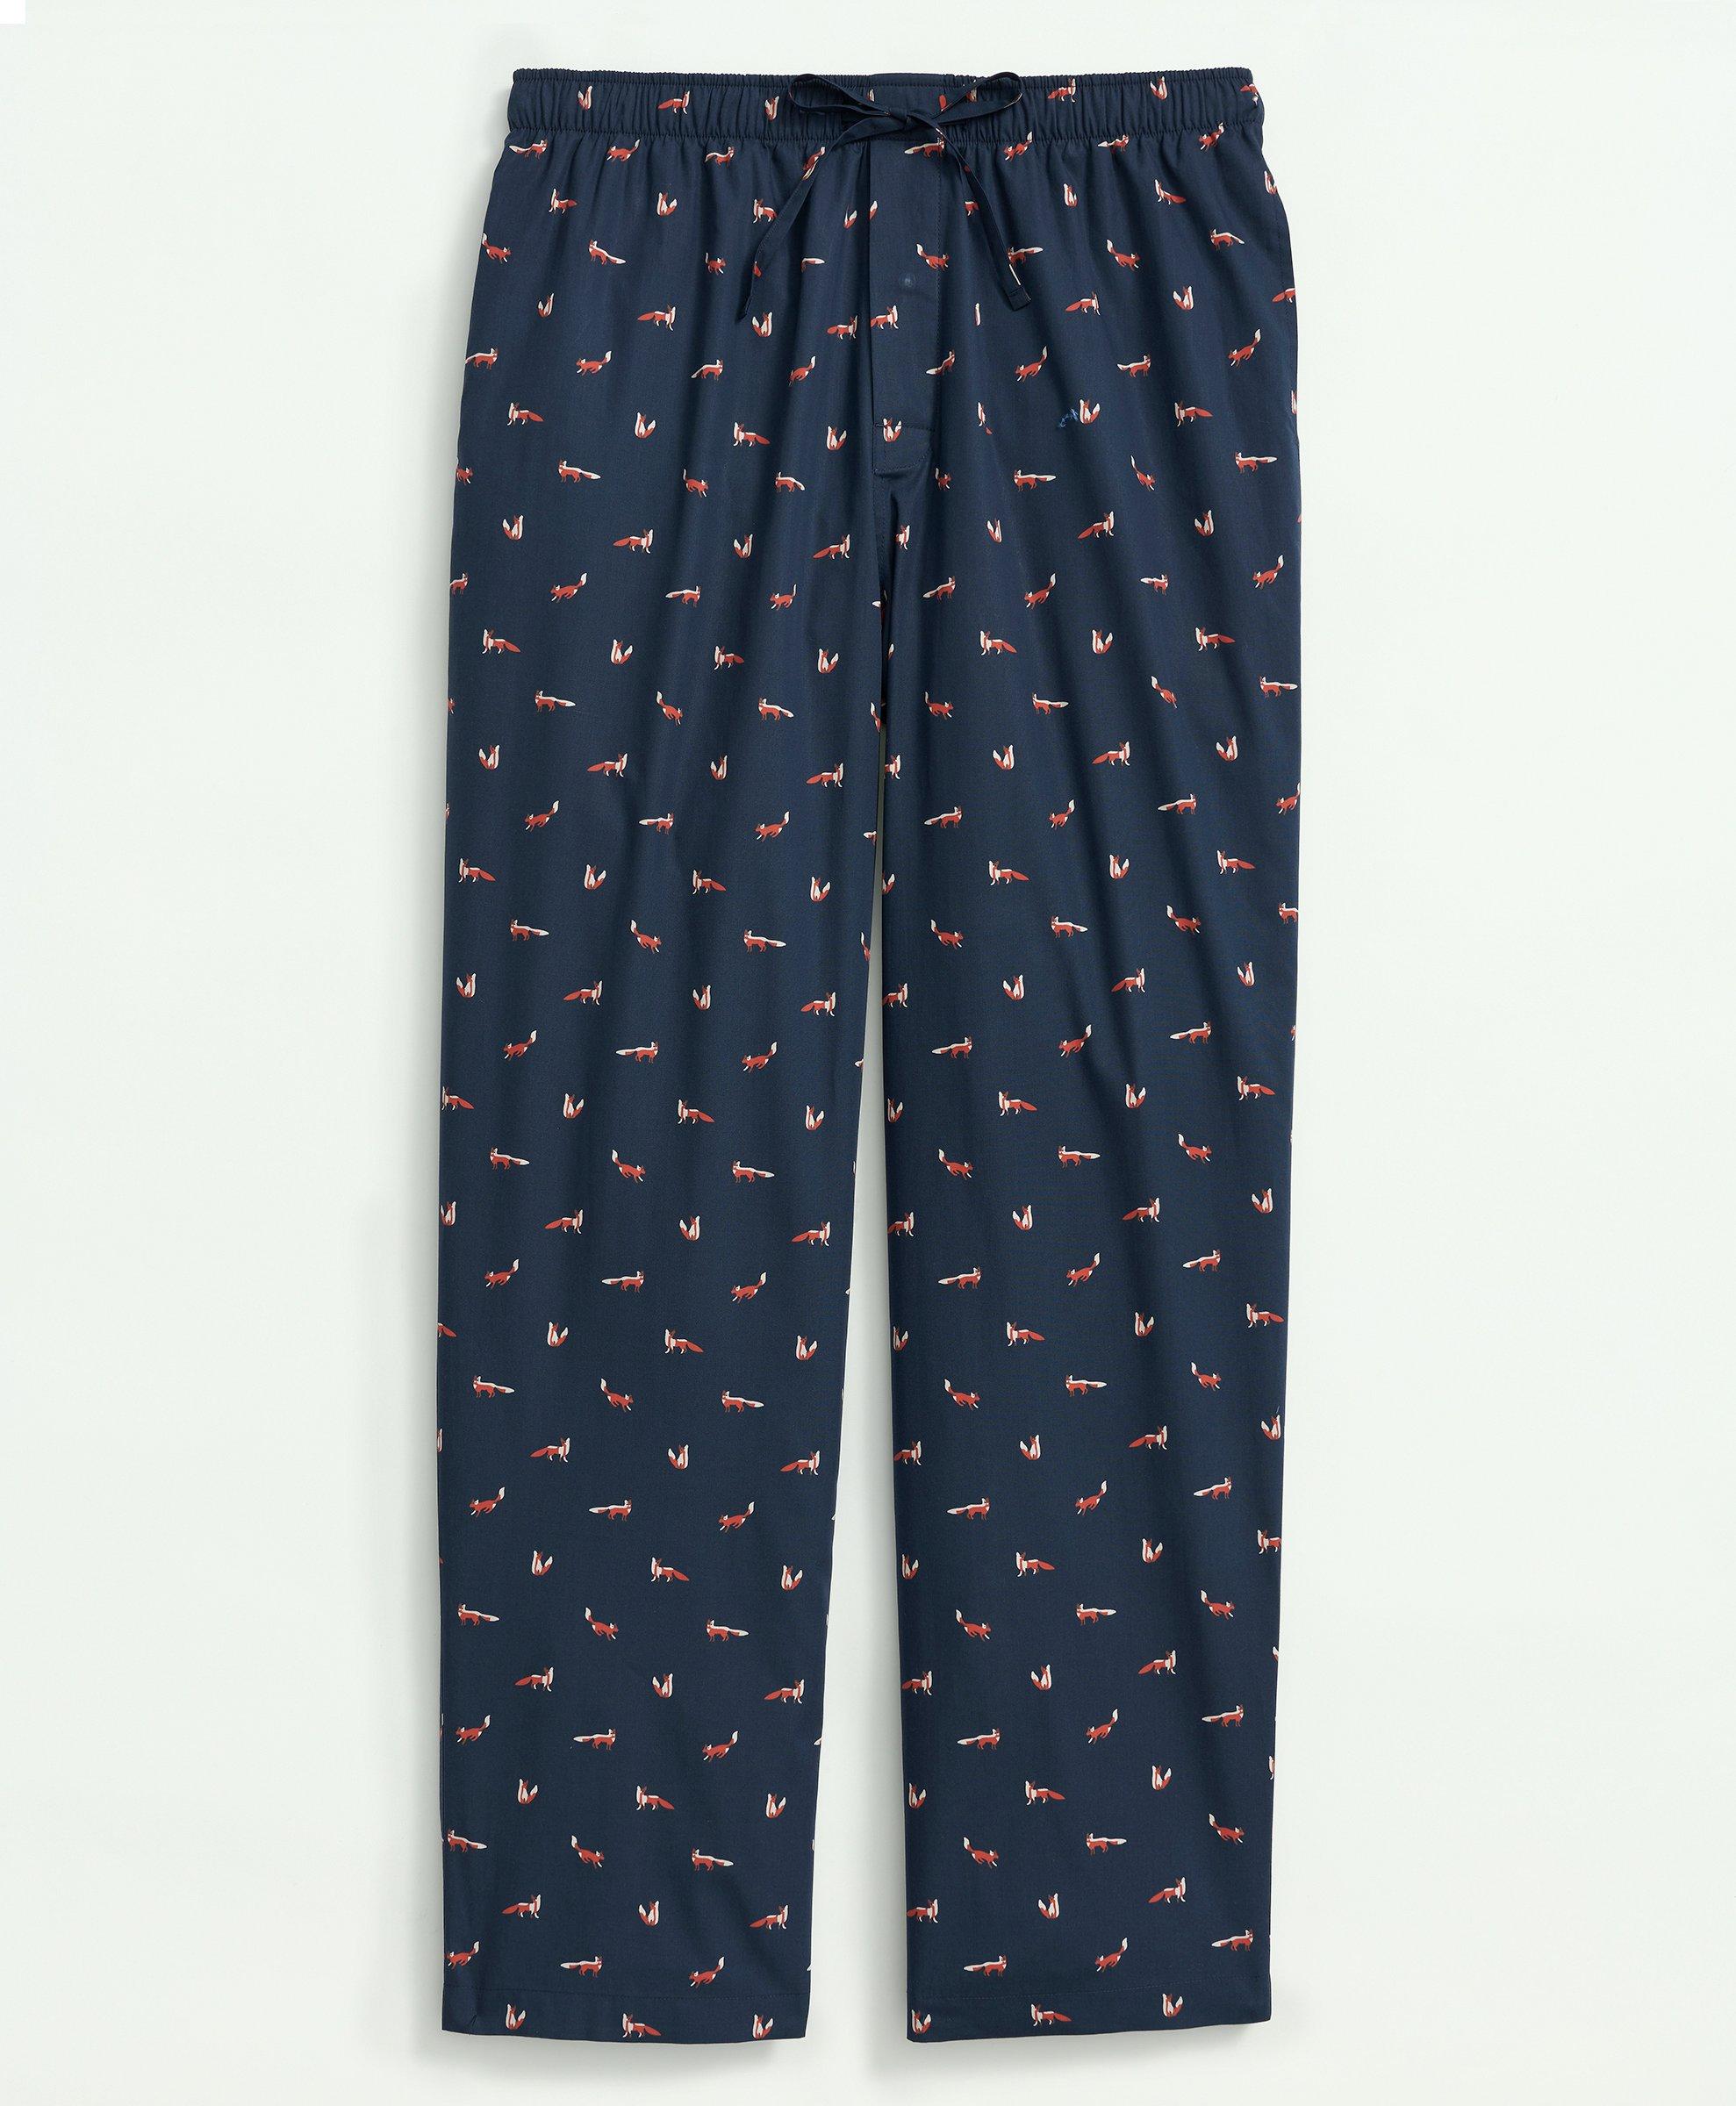 Brilliant Basics Women's Spot Print Sleep Pants - Navy - Size 10